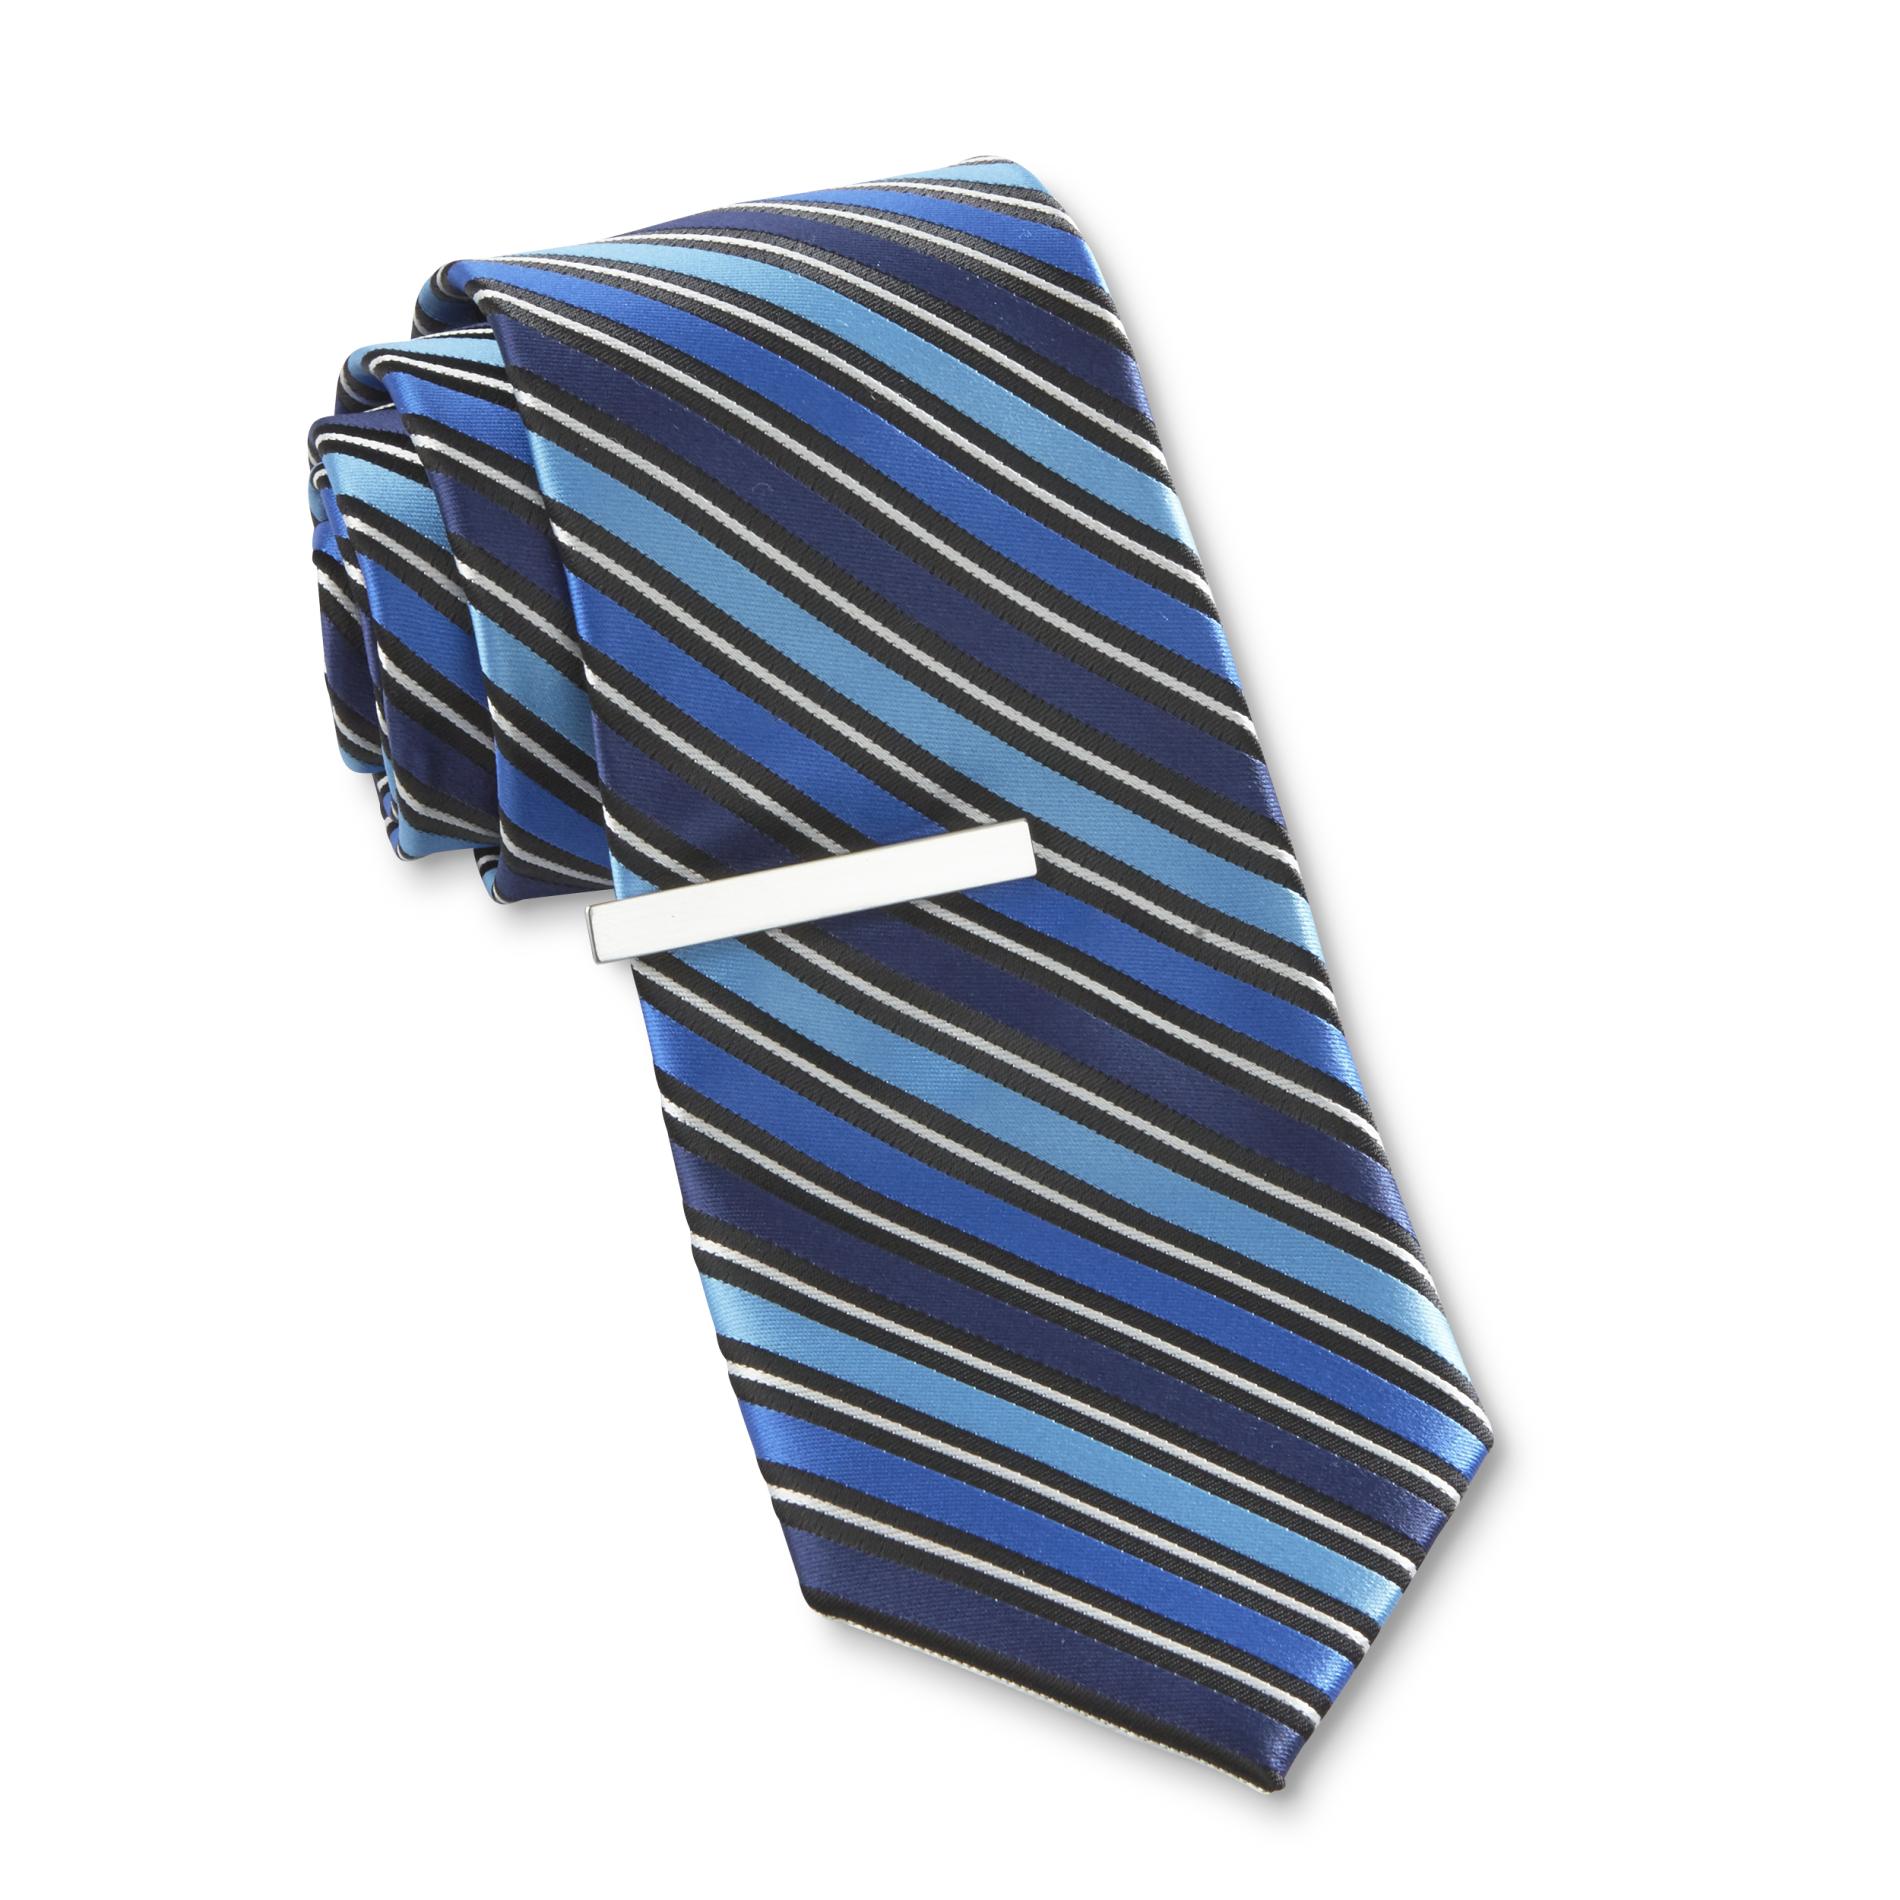 Structure Men's Necktie & Tie Clip - Striped